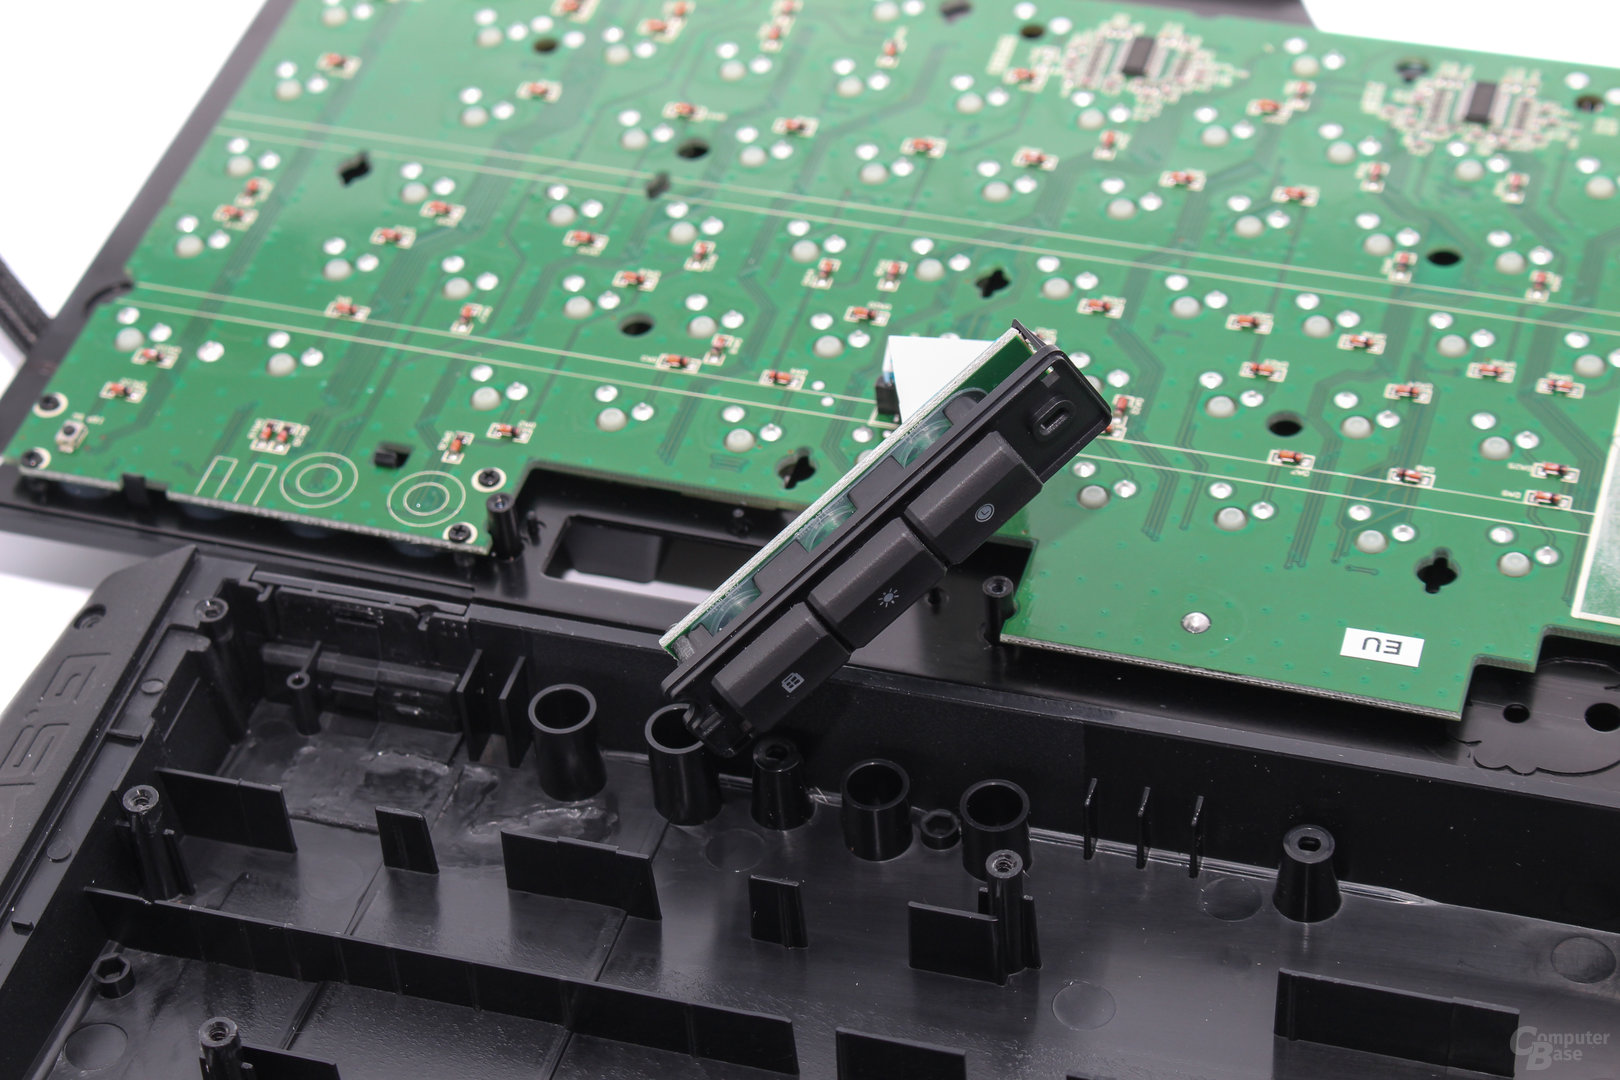 Rubberdome-Zusatztaster sind auf separaten PCBs angeordnet und mit dem Kunststoffmodul sicher arretiert